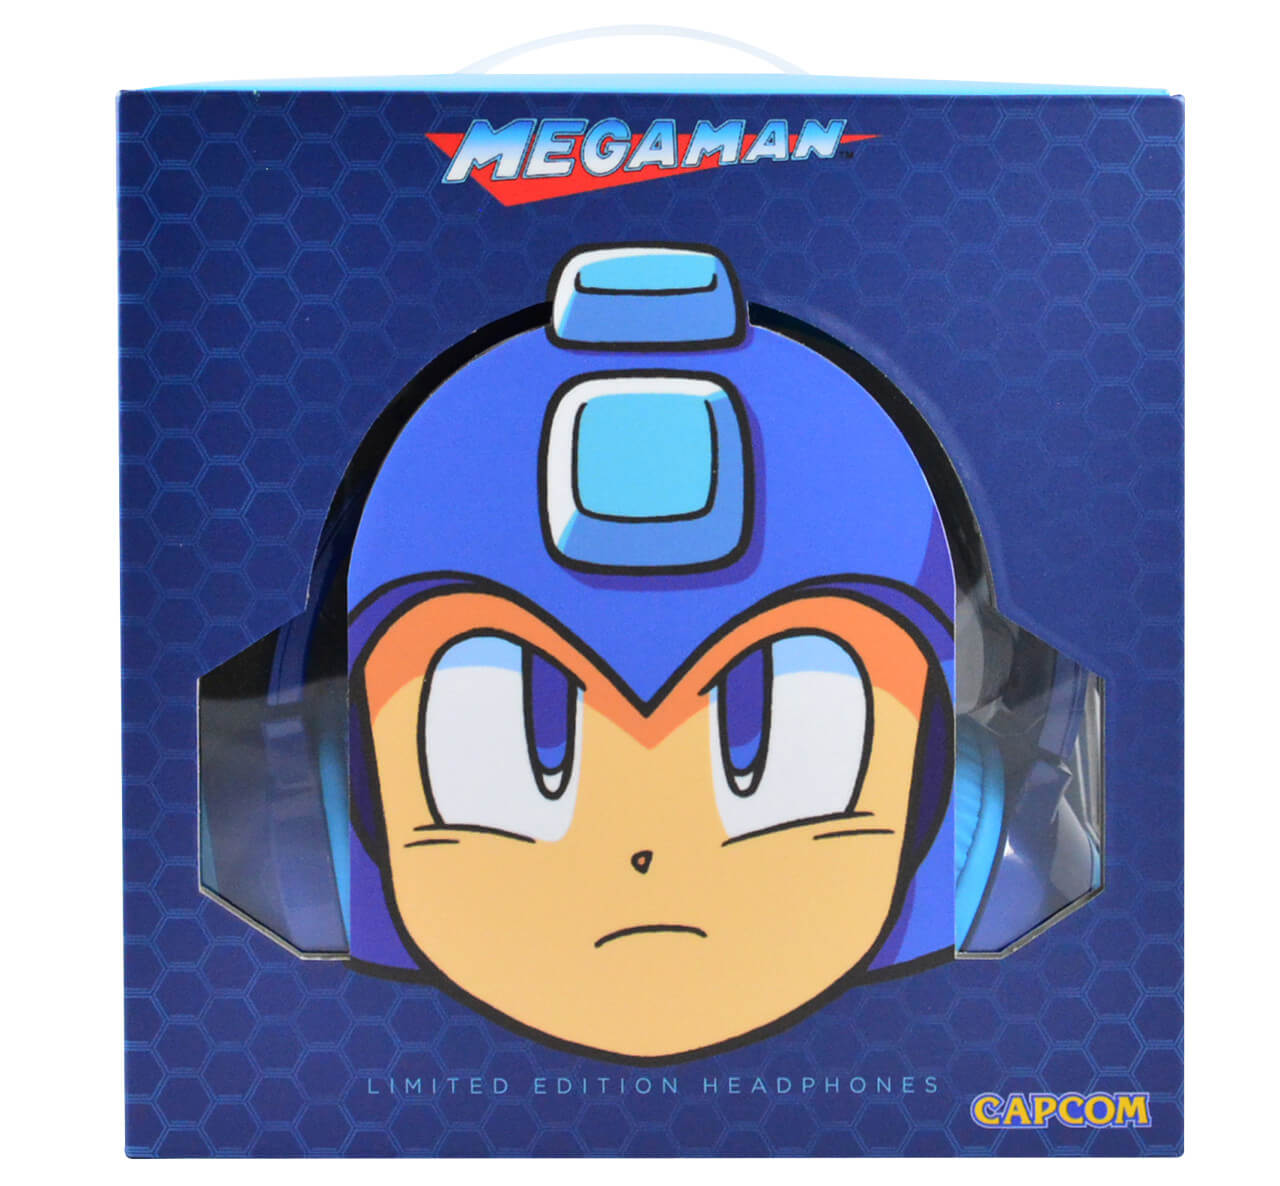 Fones de ouvido oficiais do Mega Man